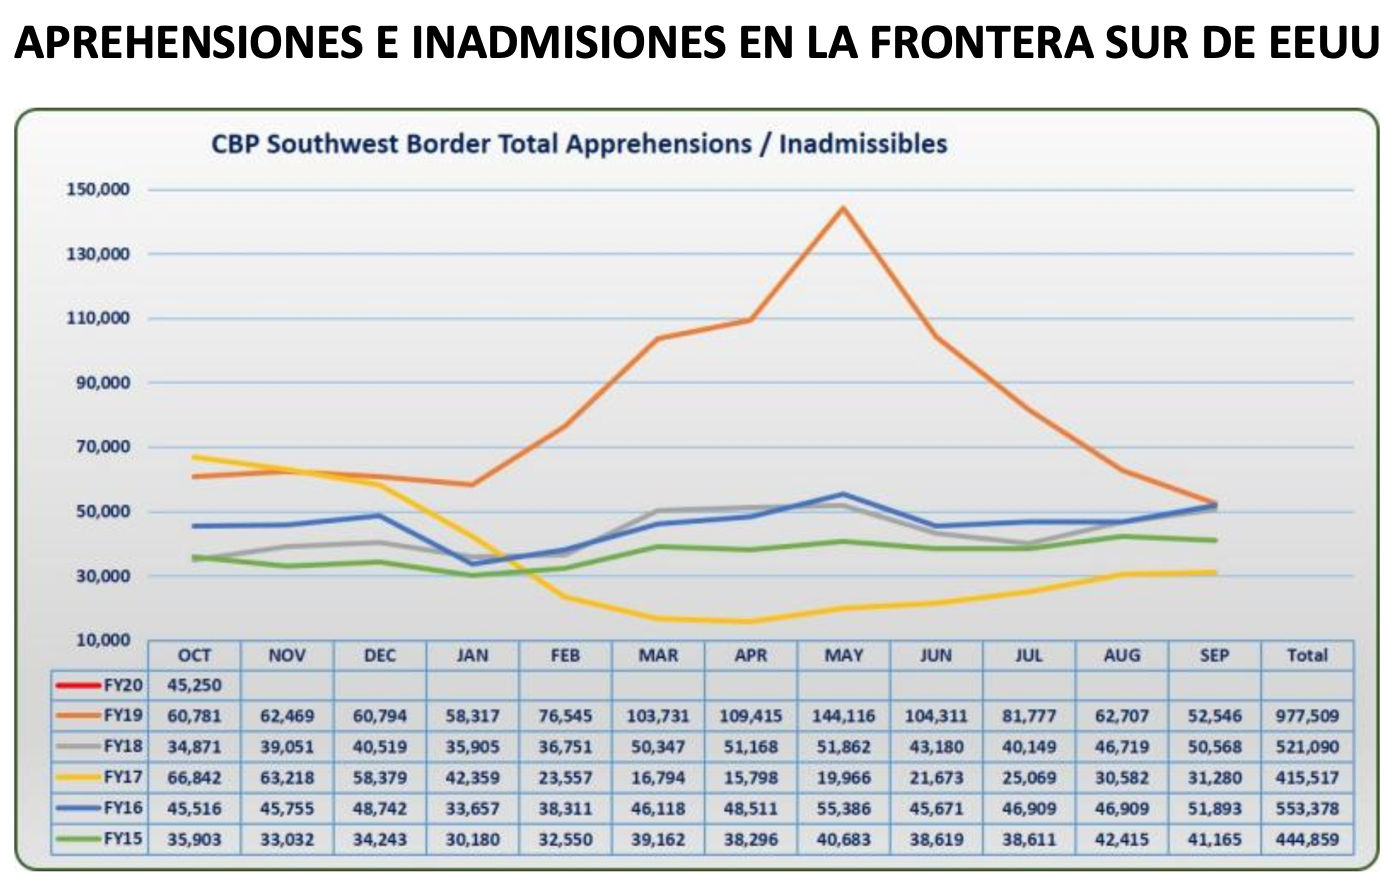 Aprehensiones e inadmisiones realizadas por la guardia de frontera de EEUU, distribuidas por meses durante los últimos años fiscales (FY) [Tomado de CBP]